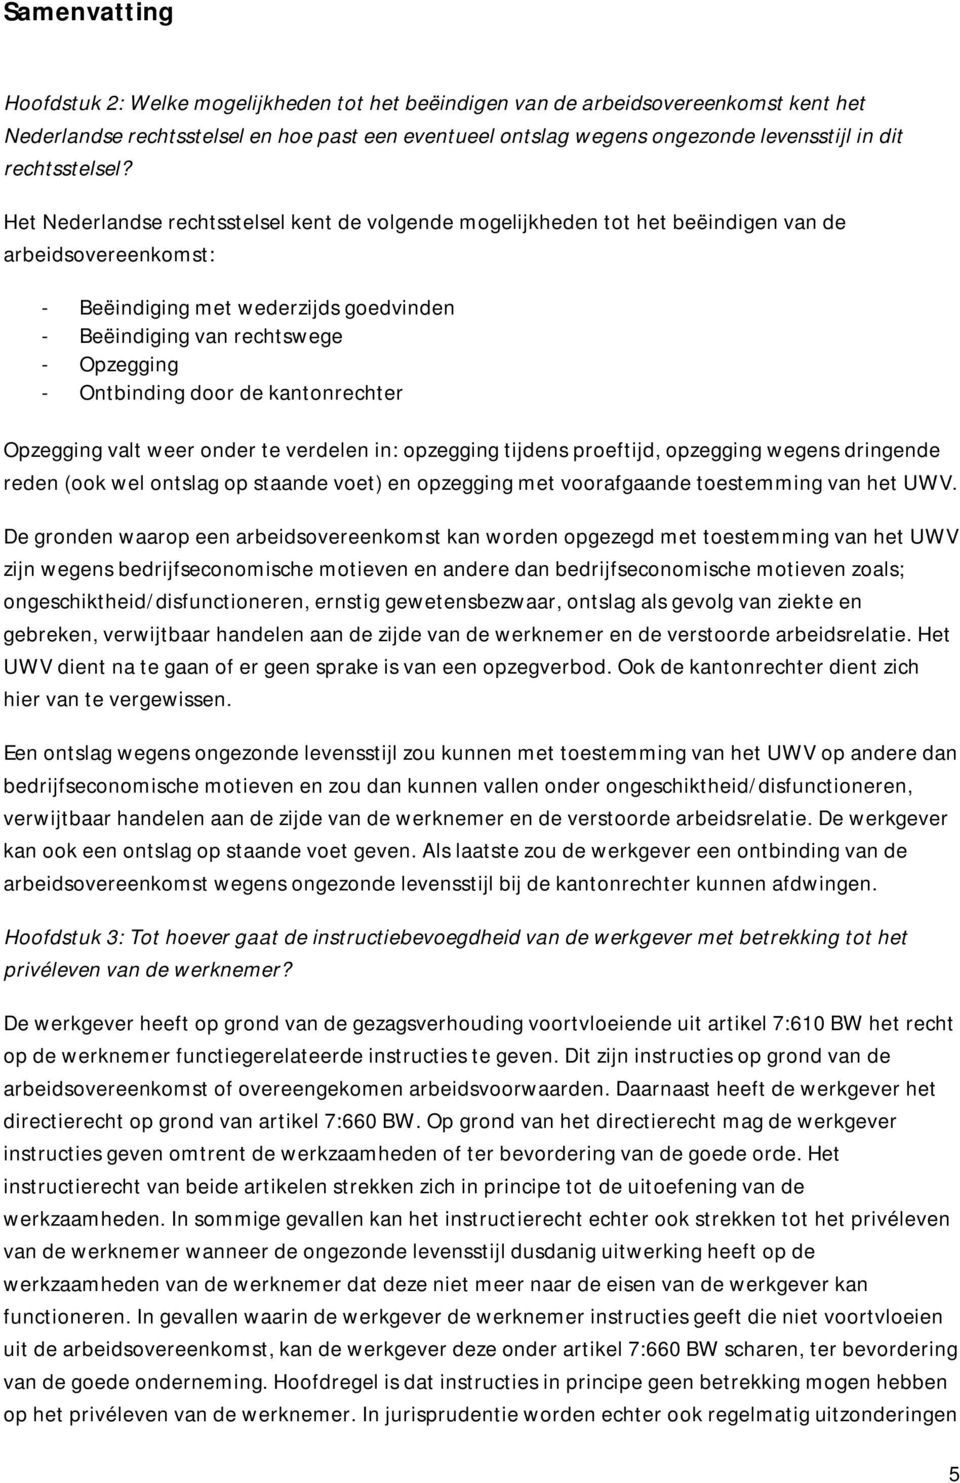 Het Nederlandse rechtsstelsel kent de volgende mogelijkheden tot het beëindigen van de arbeidsovereenkomst: - Beëindiging met wederzijds goedvinden - Beëindiging van rechtswege - Opzegging -